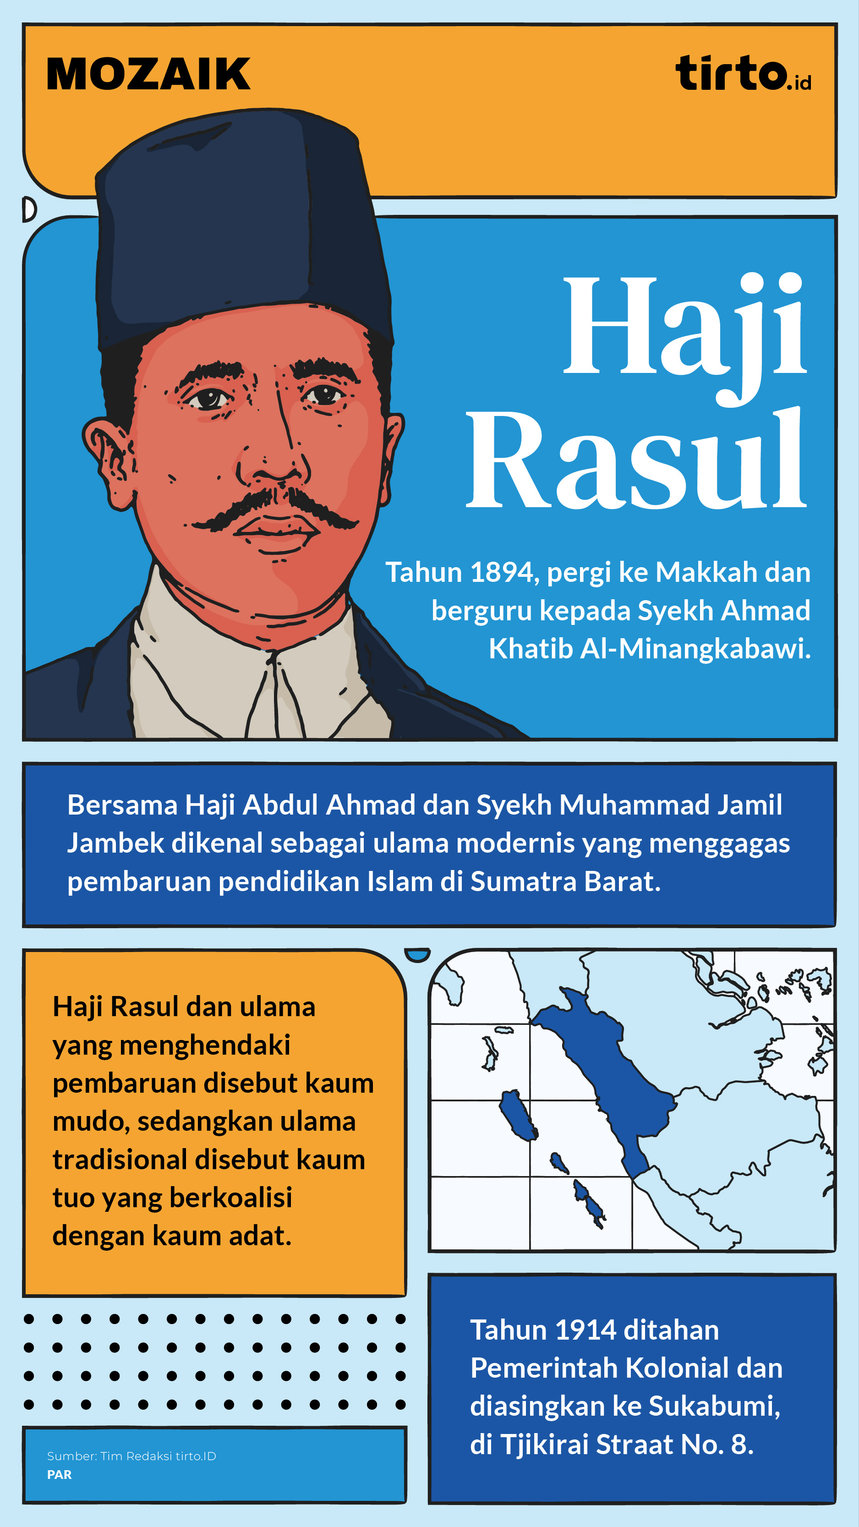 Infografik Mozaik Haji Rasul